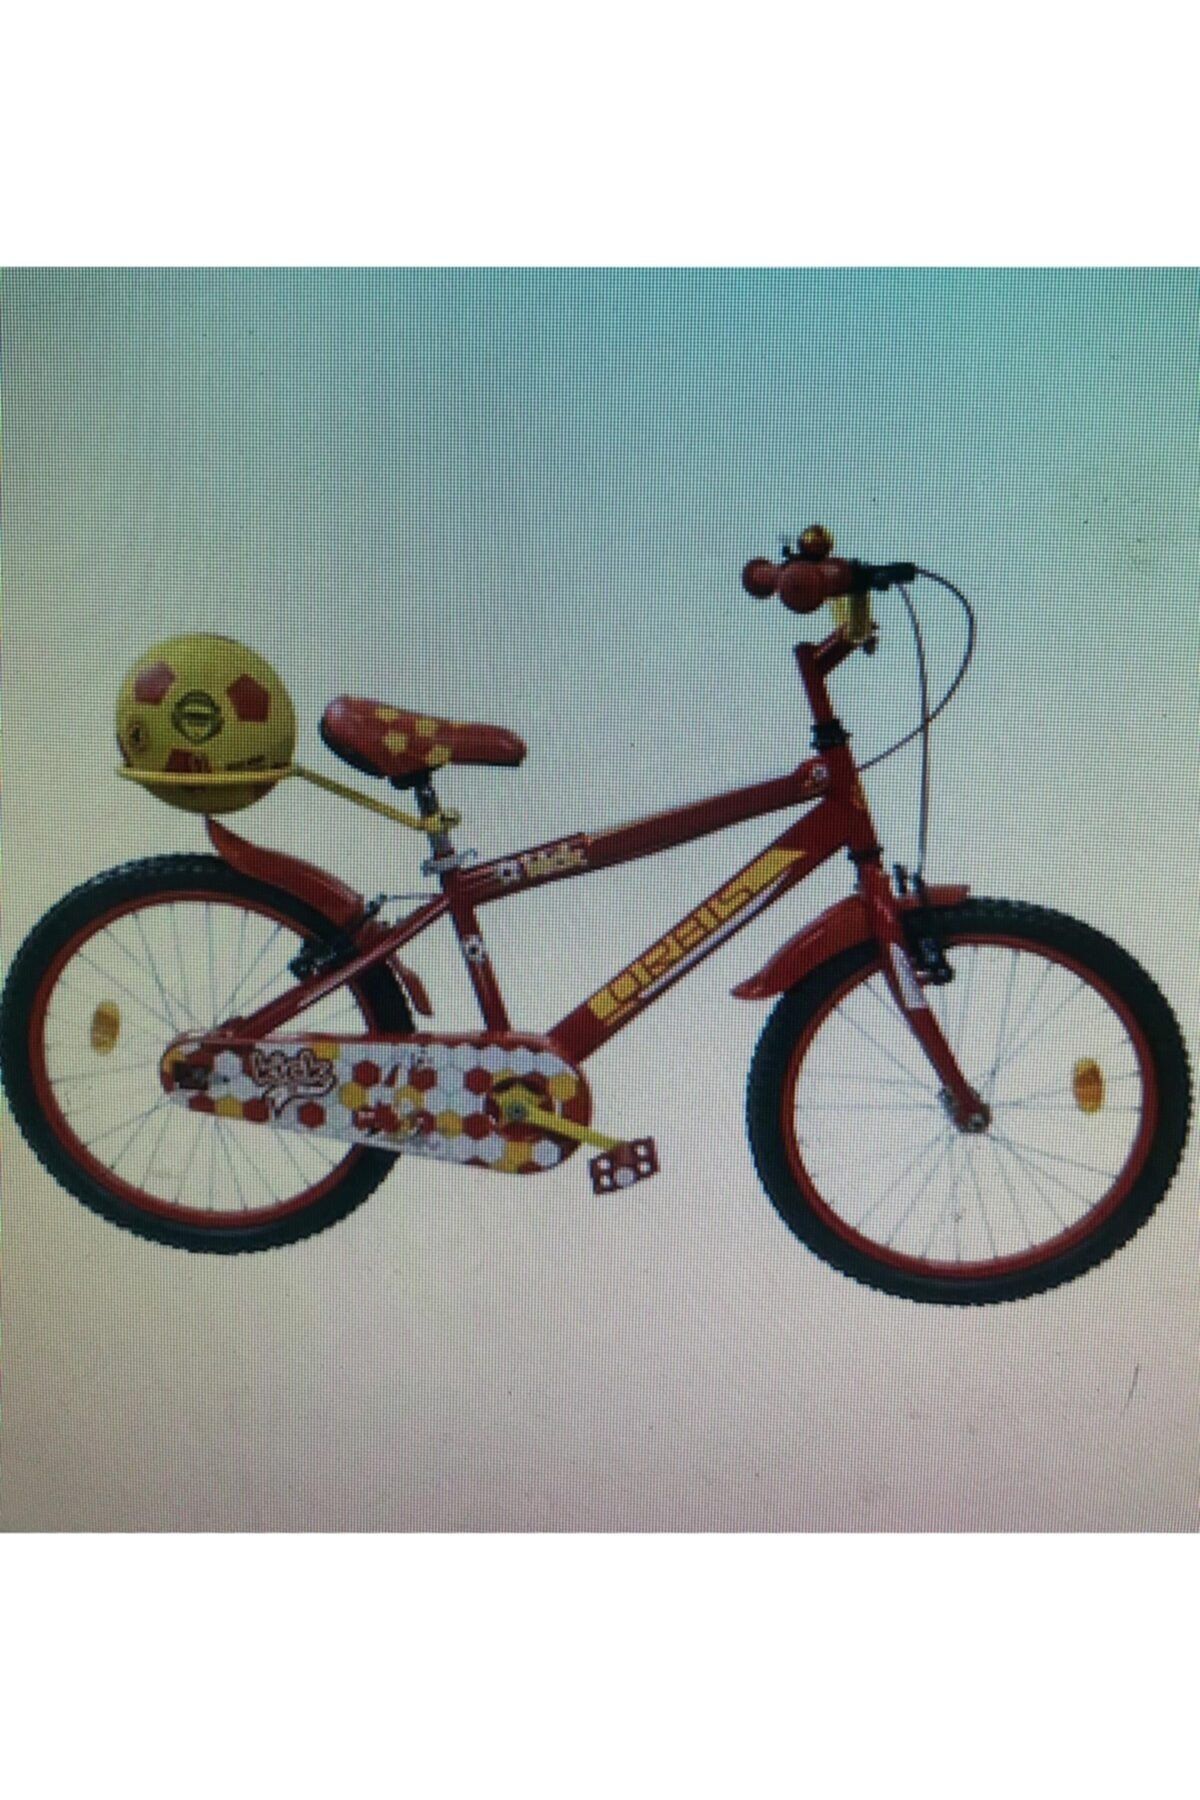 Orbis 20 Jant Fanatik Top, Zil, Ayna Ve Sepetli Çocuk Bisikleti 6-9 Yaş Sarı Kırmızı